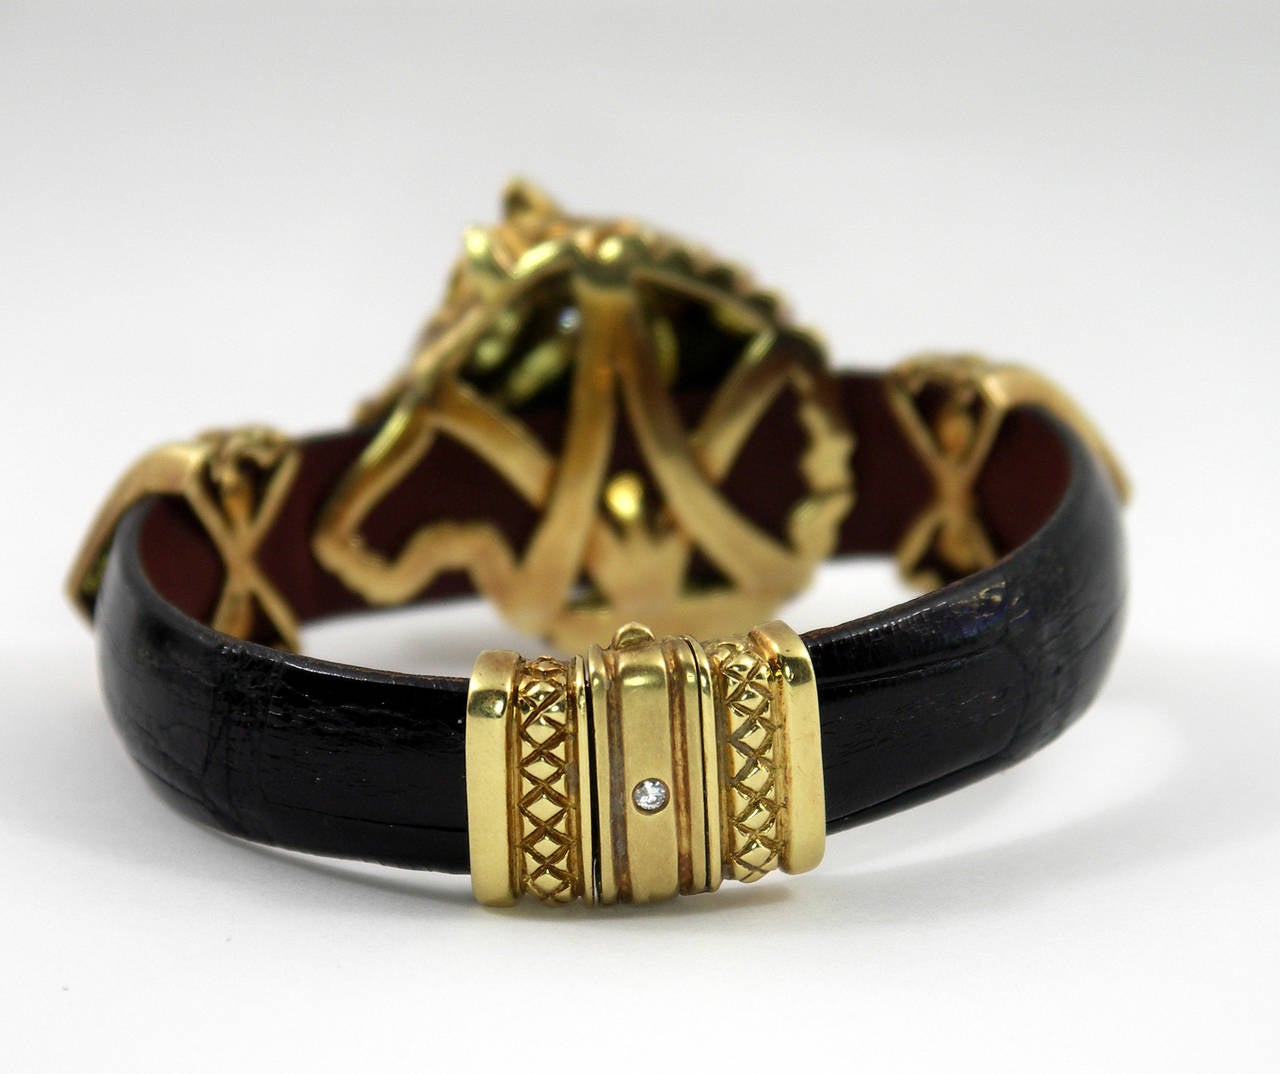 Nancy and David Horse Leather Diamond Gold Themed Bracelet 1